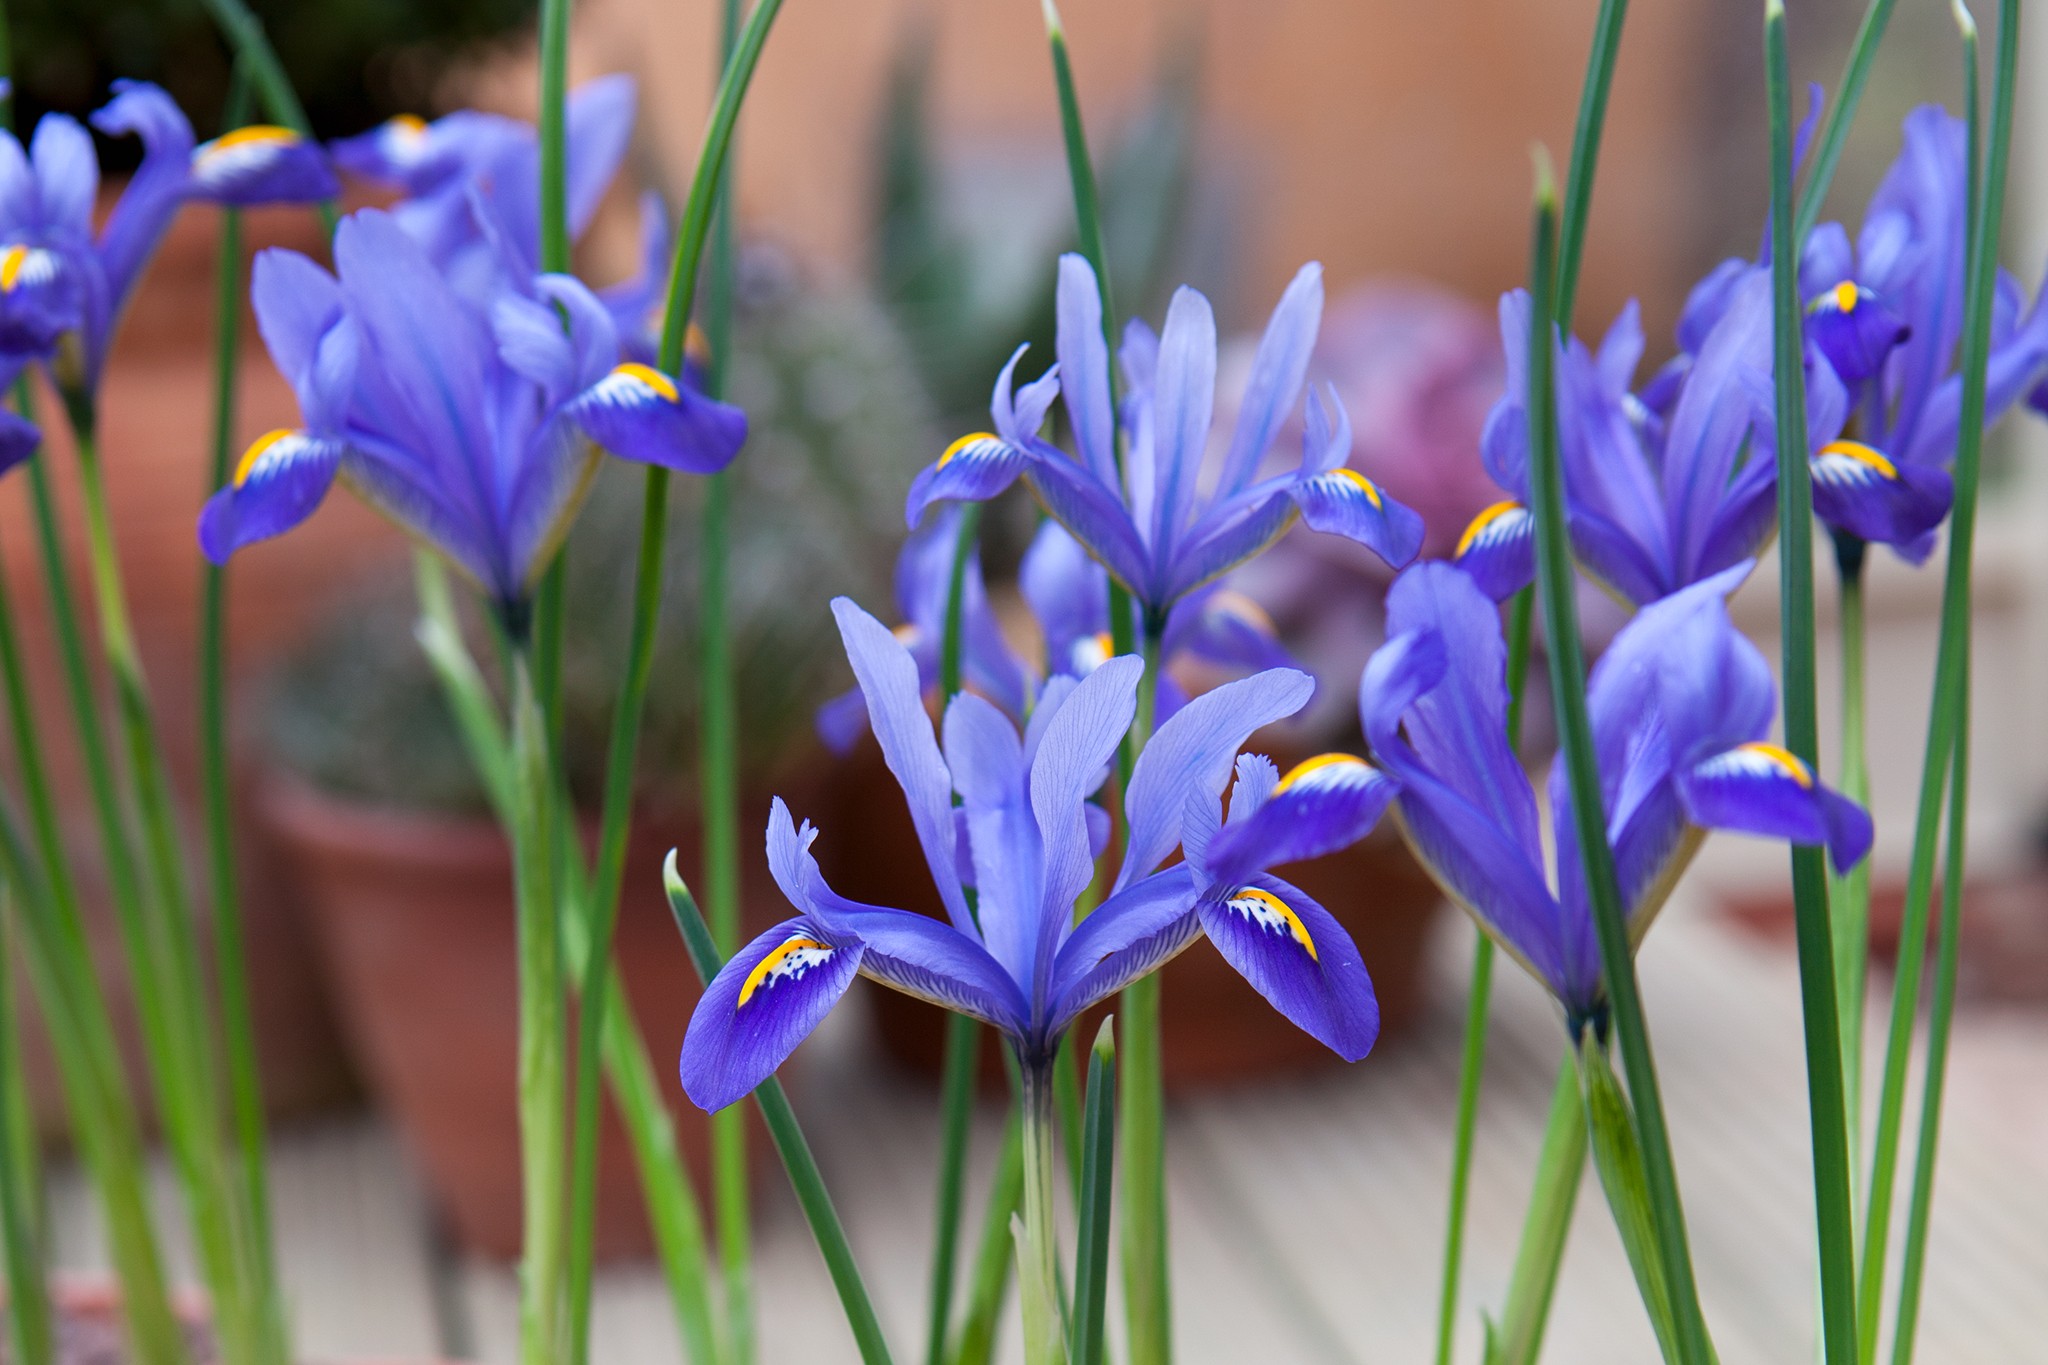 Iris reticulata flowers